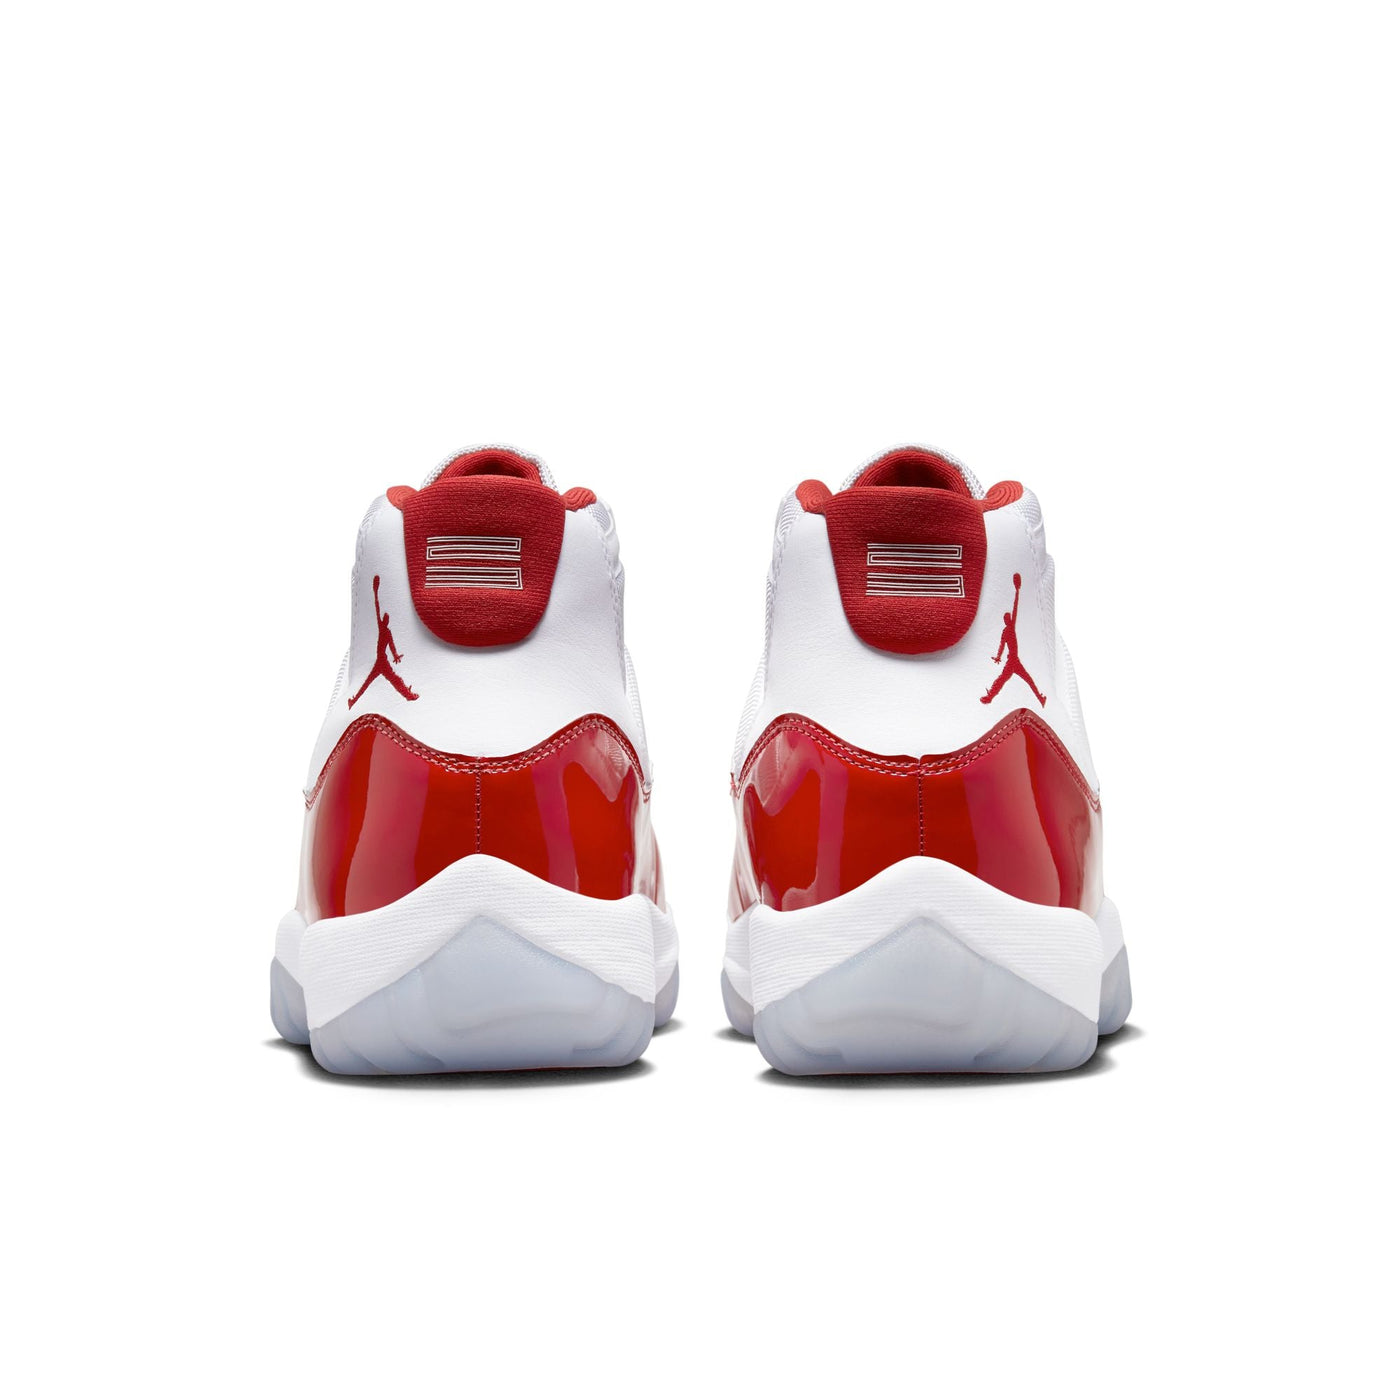 Mens Air Jordan 11 Retro Shoe